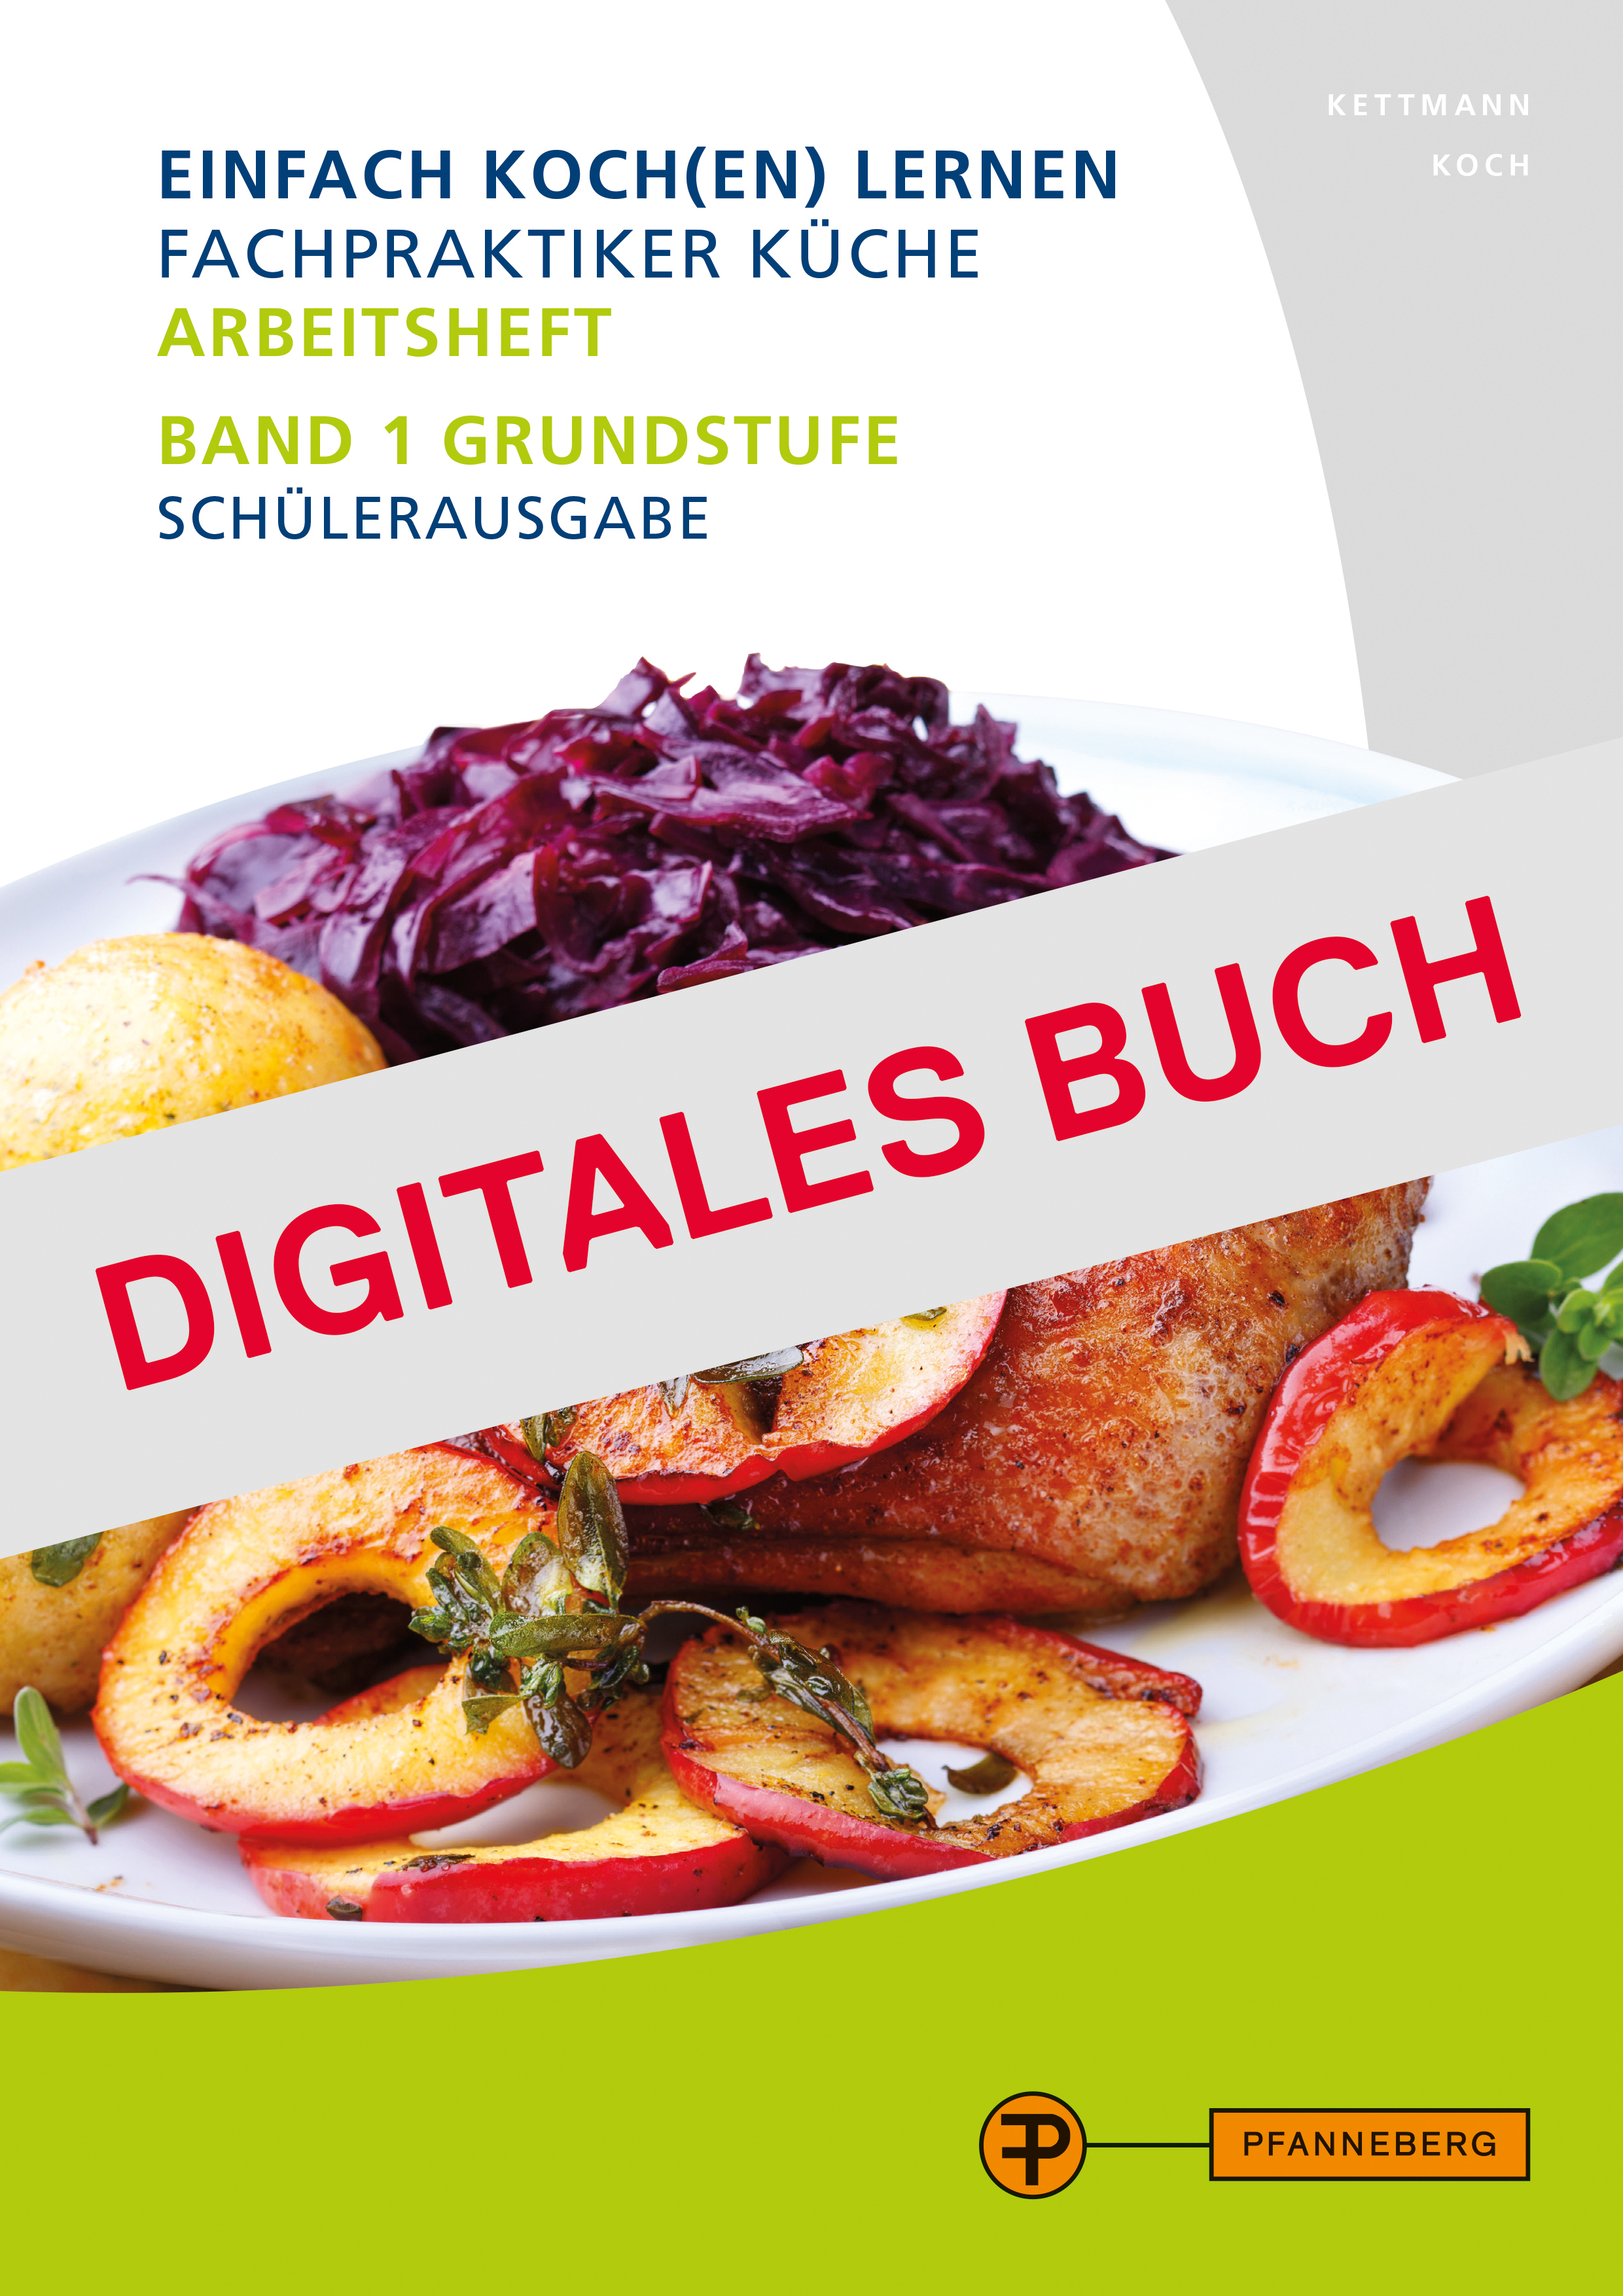 Arbeitsheft Fachpraktiker Küche Band 1 - Digitales Buch